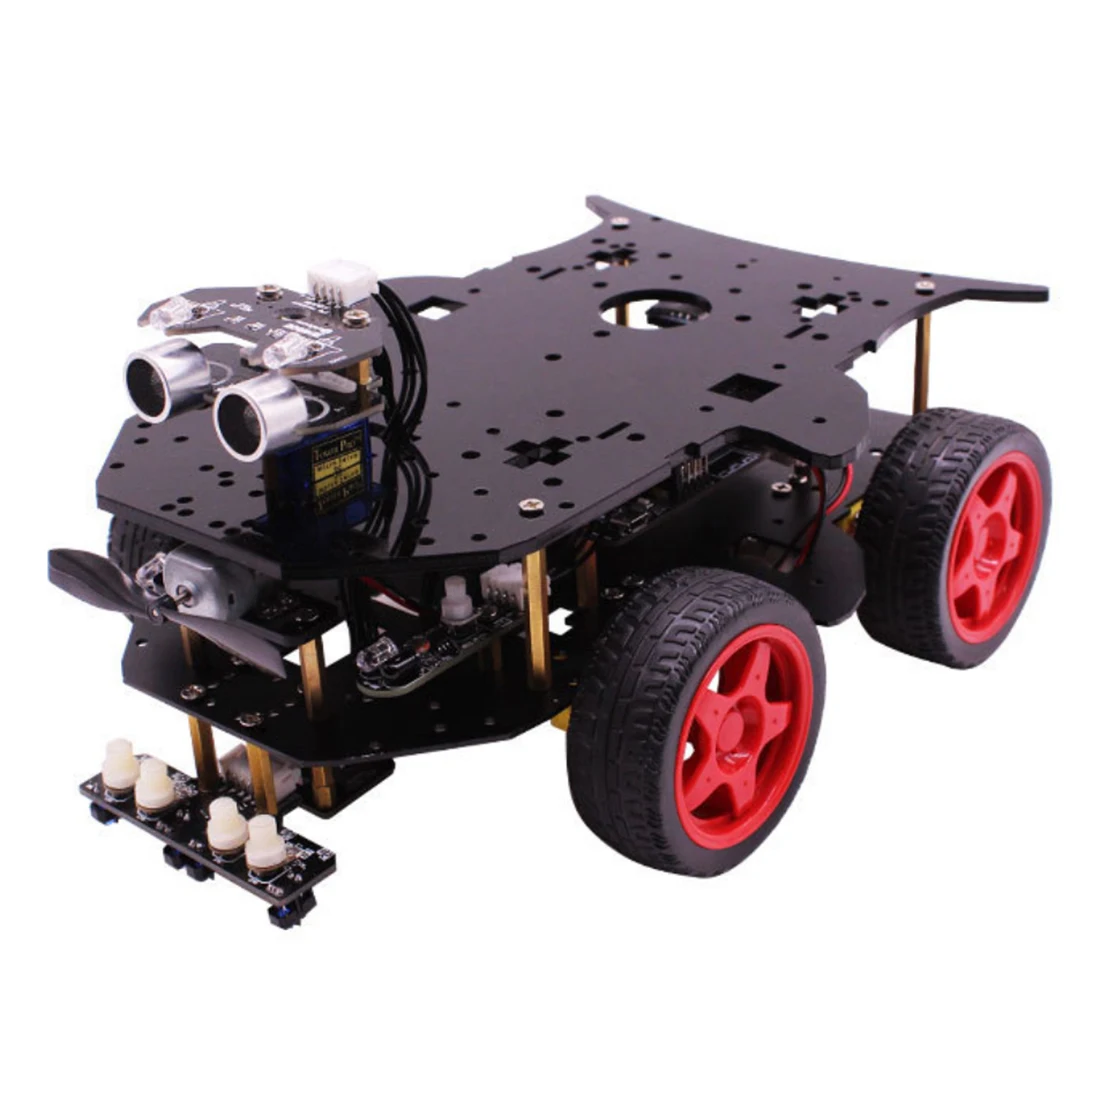 Робот автомобиль 4WD Программирование стволовых образование внедорожный светильник отслеживания Робот Игрушки с учебником для Arduino с для R3 материнской платы